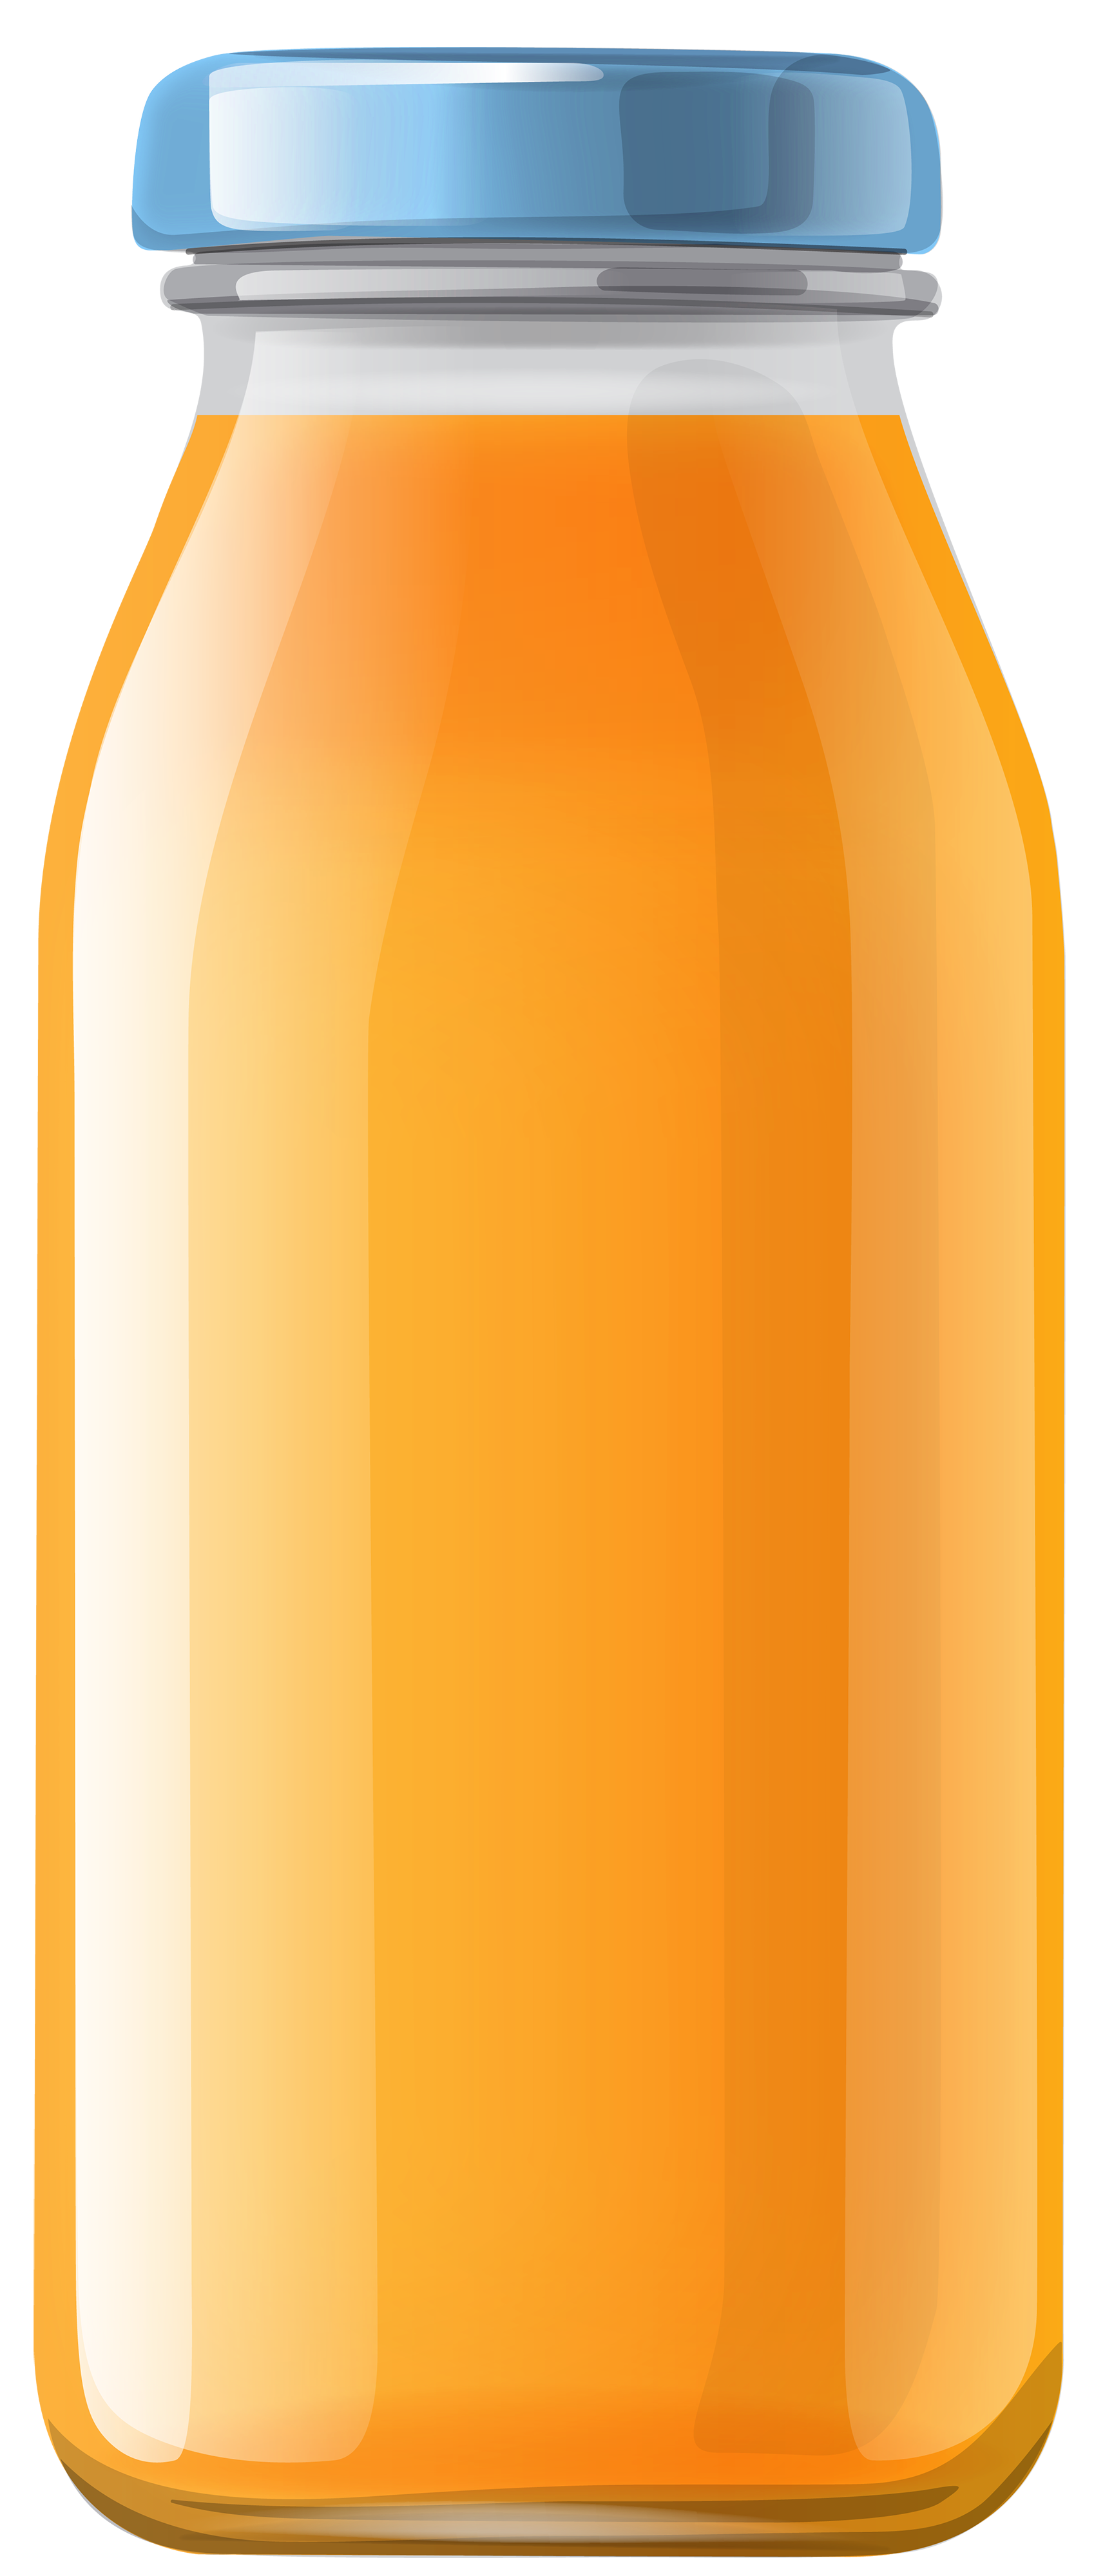 Orange juice bottle clipart web png